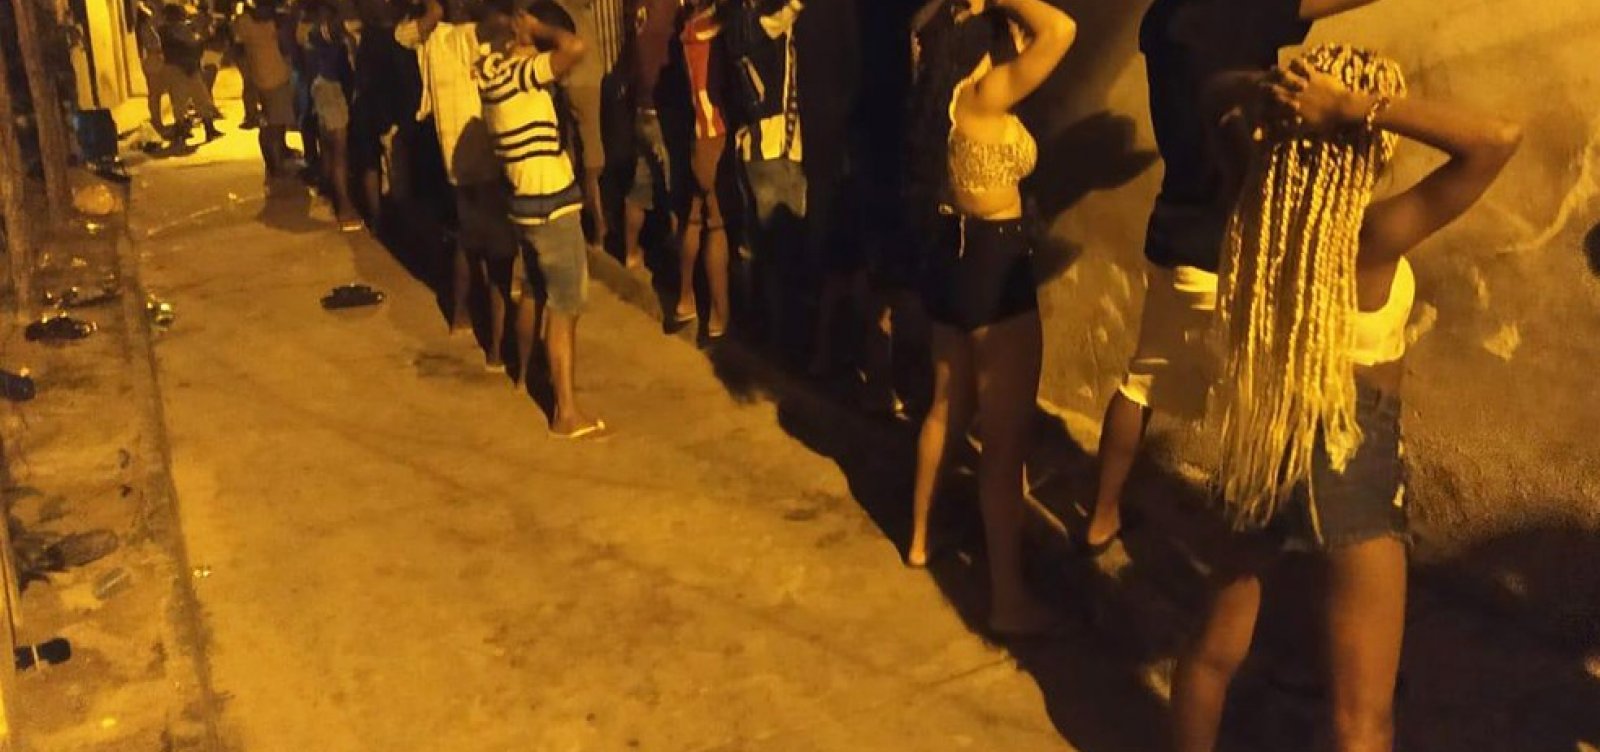 Polícia interrompe festa paredão em Lauro de Freitas 